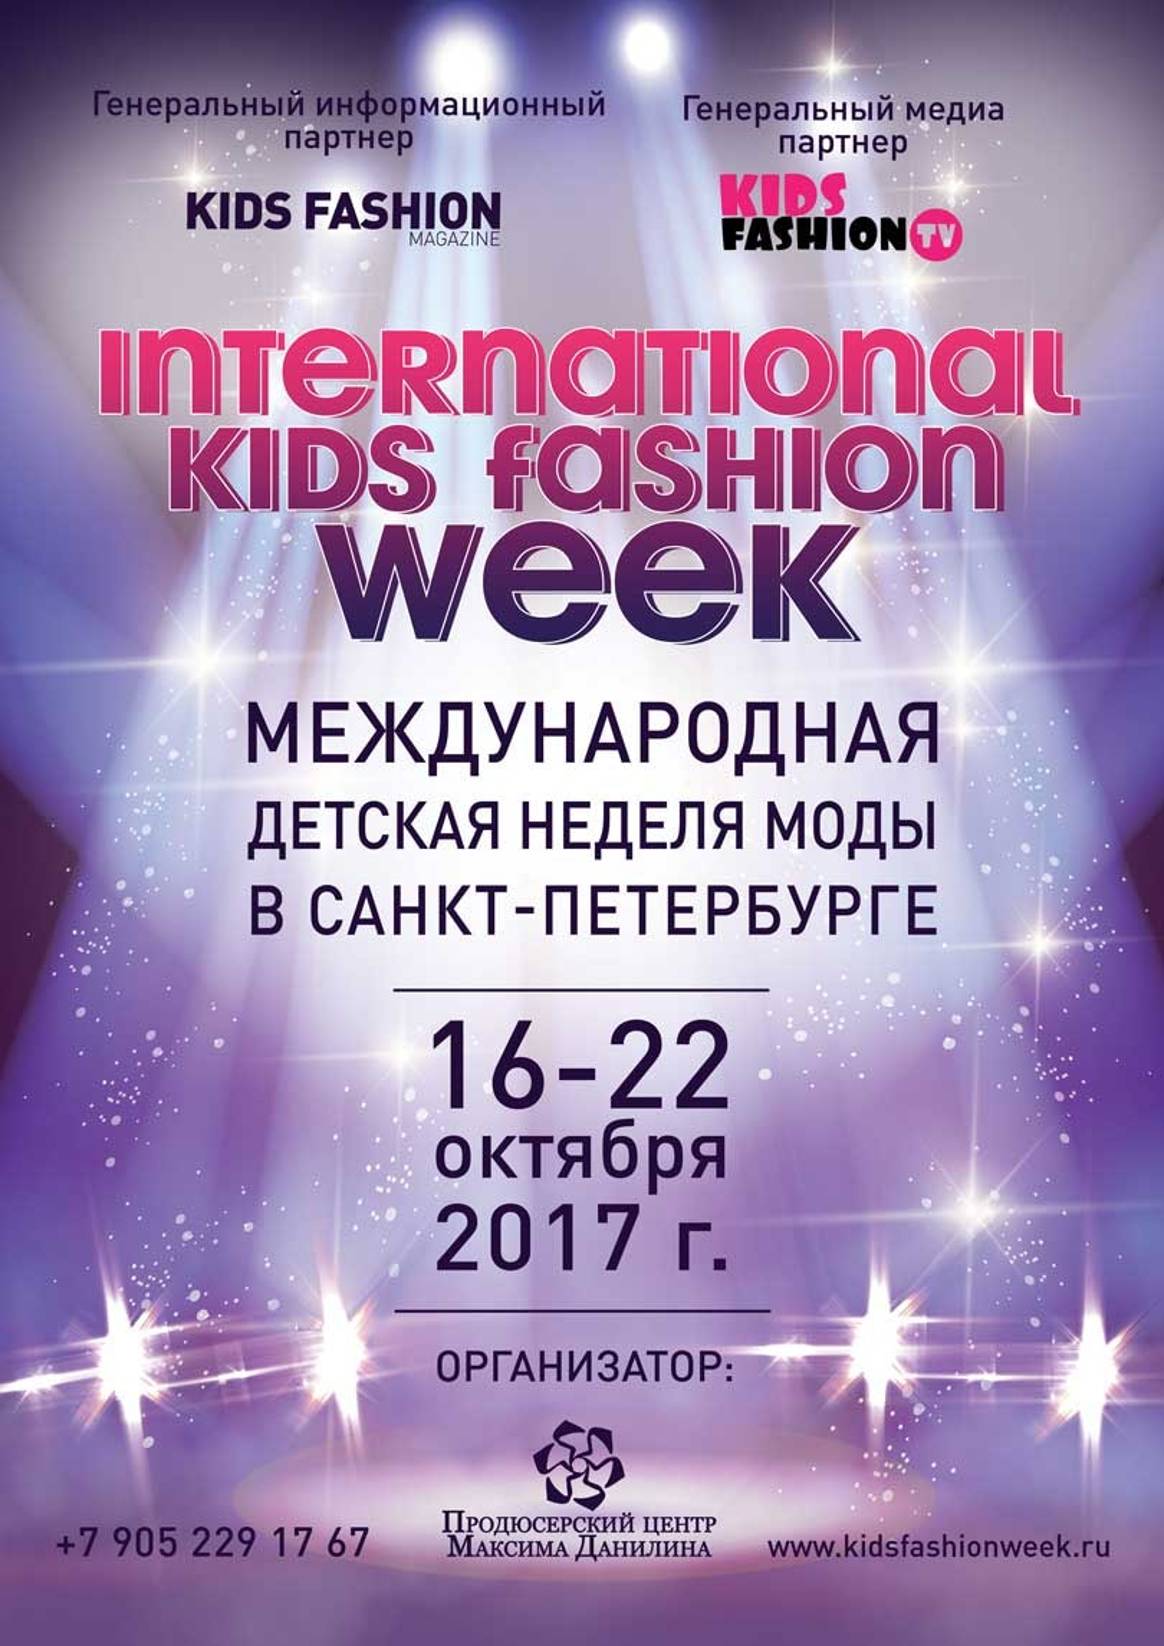 Международная детская неделя моды в Санкт-Петербурге: осень 2017 г.